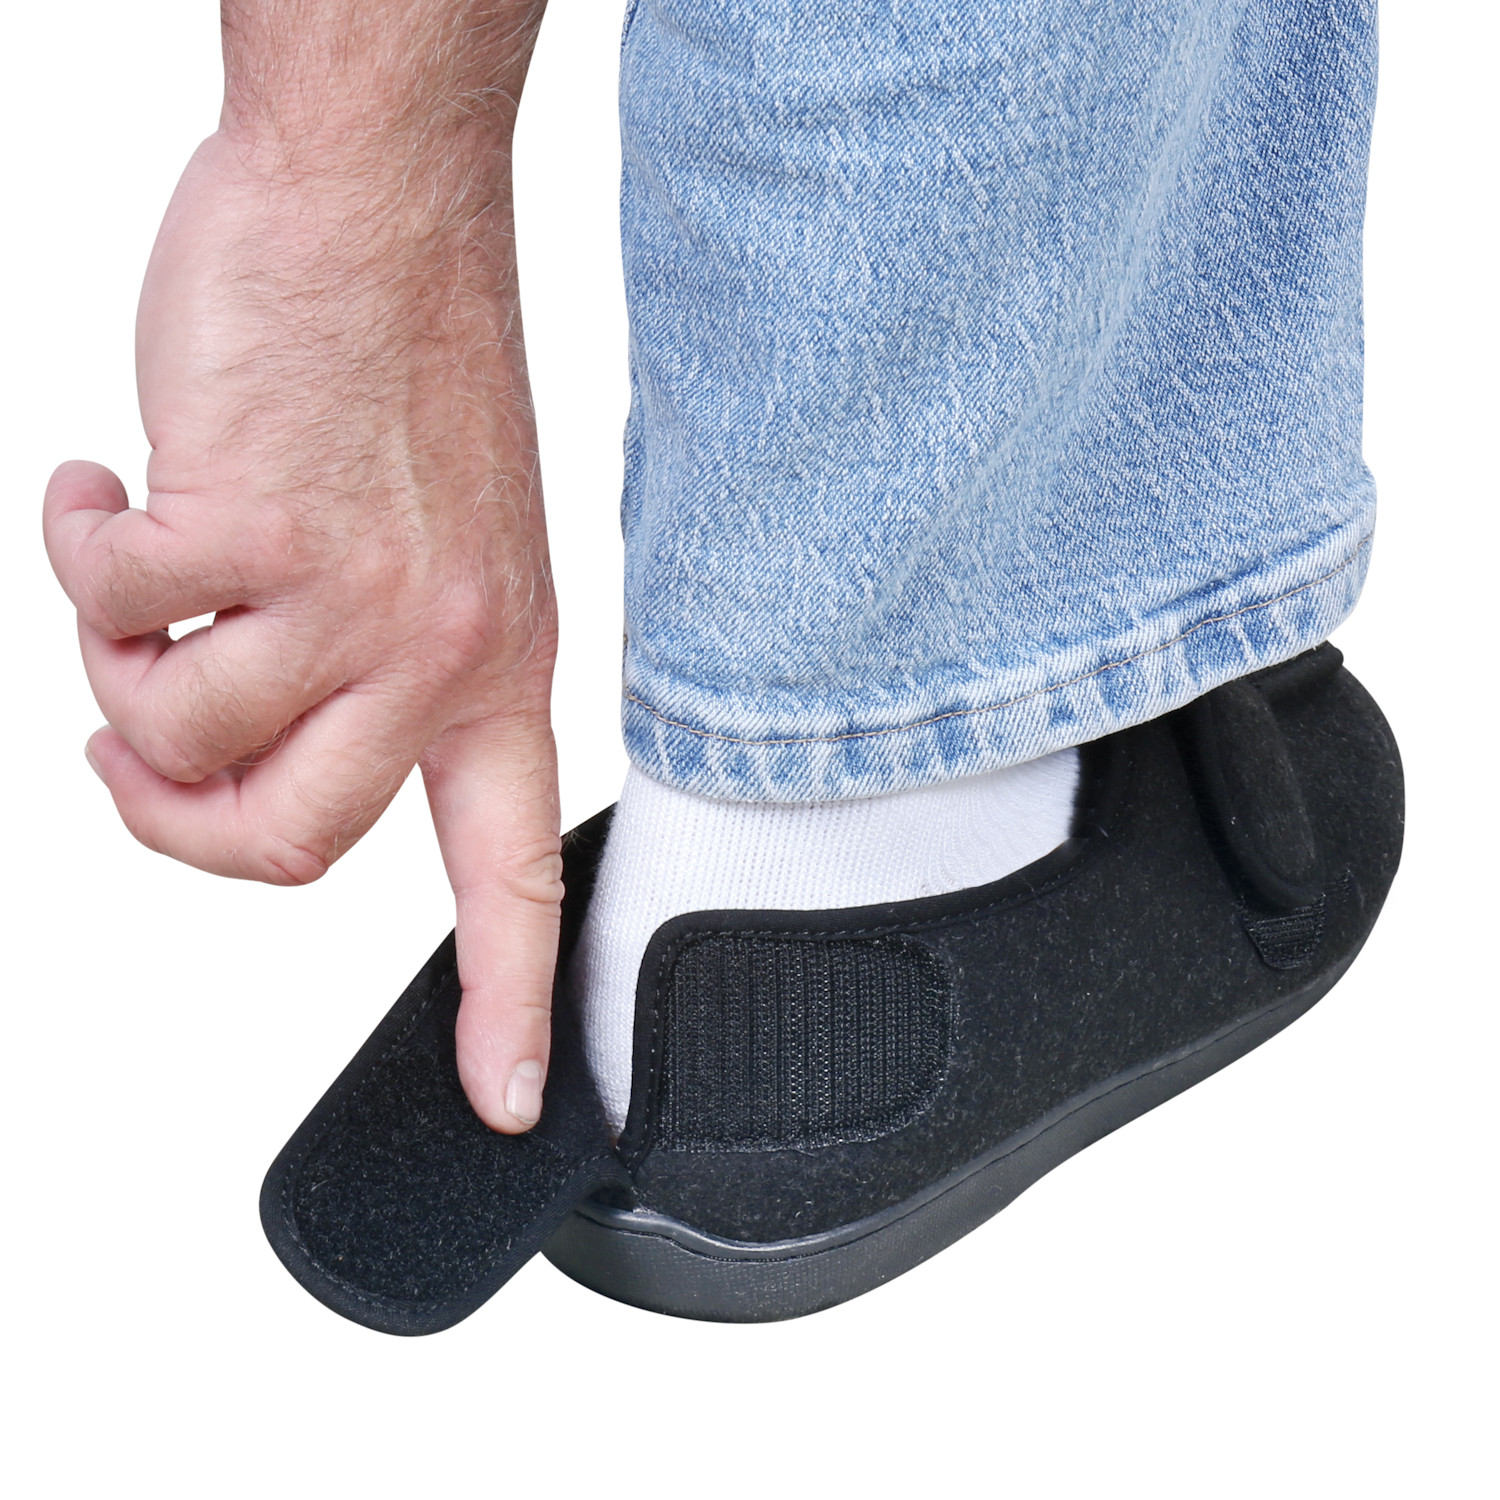 Foamtreads Men's Comfort Wool Swollen Feet Slippers Support Plus